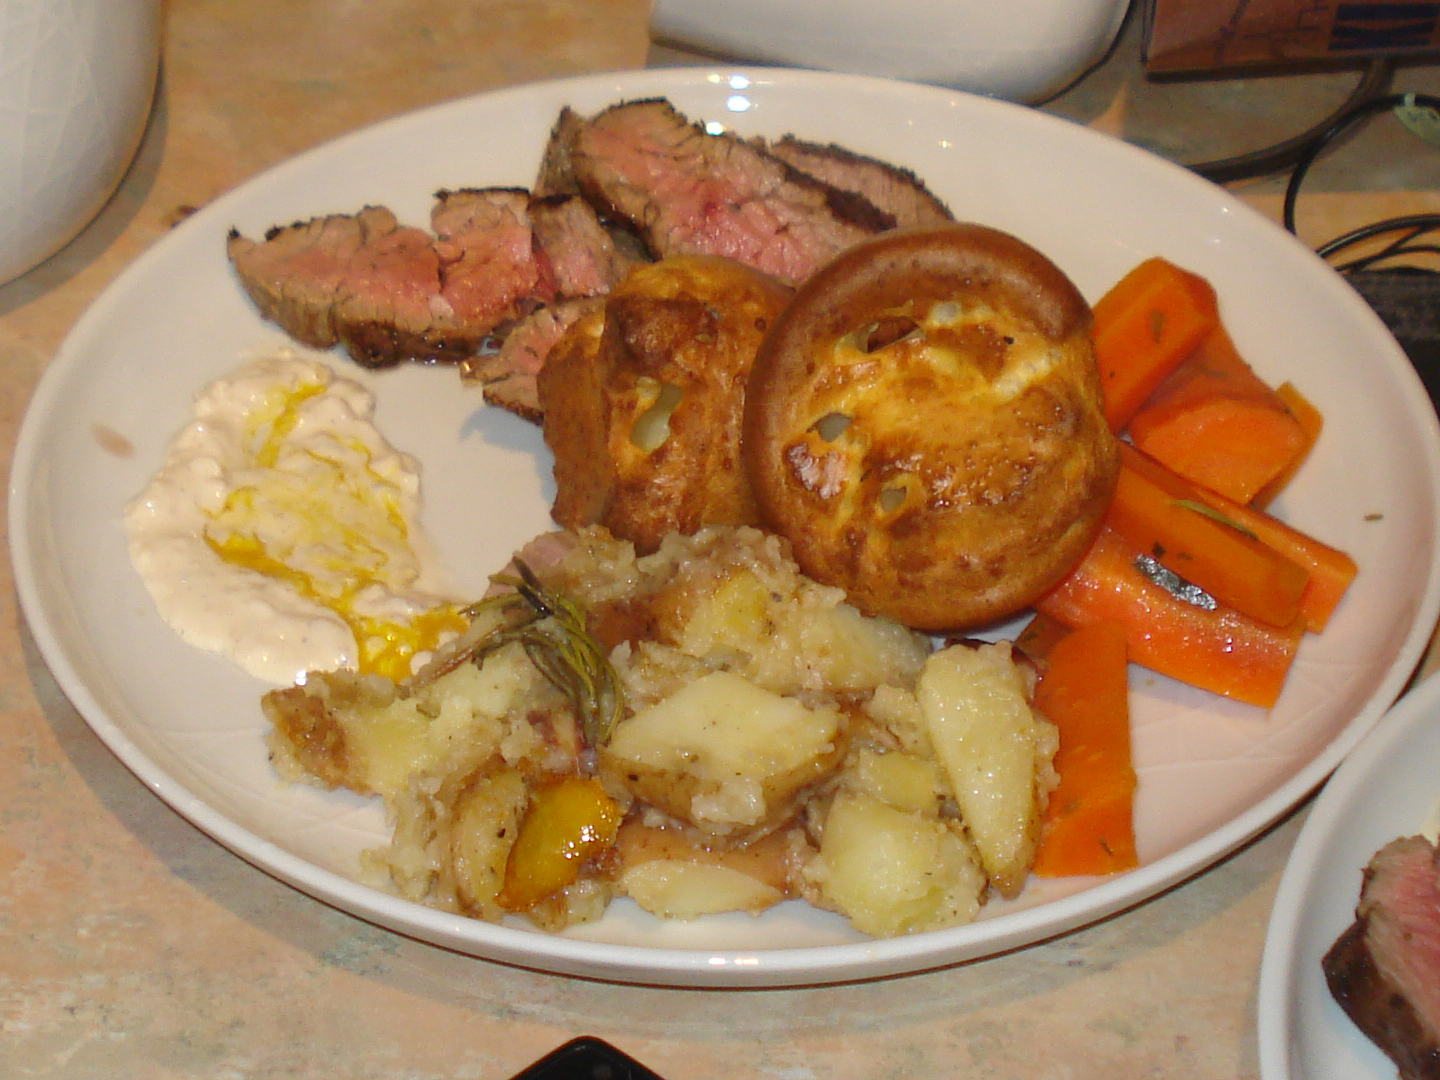 jamie oliver's 30 minute roast beef dinner